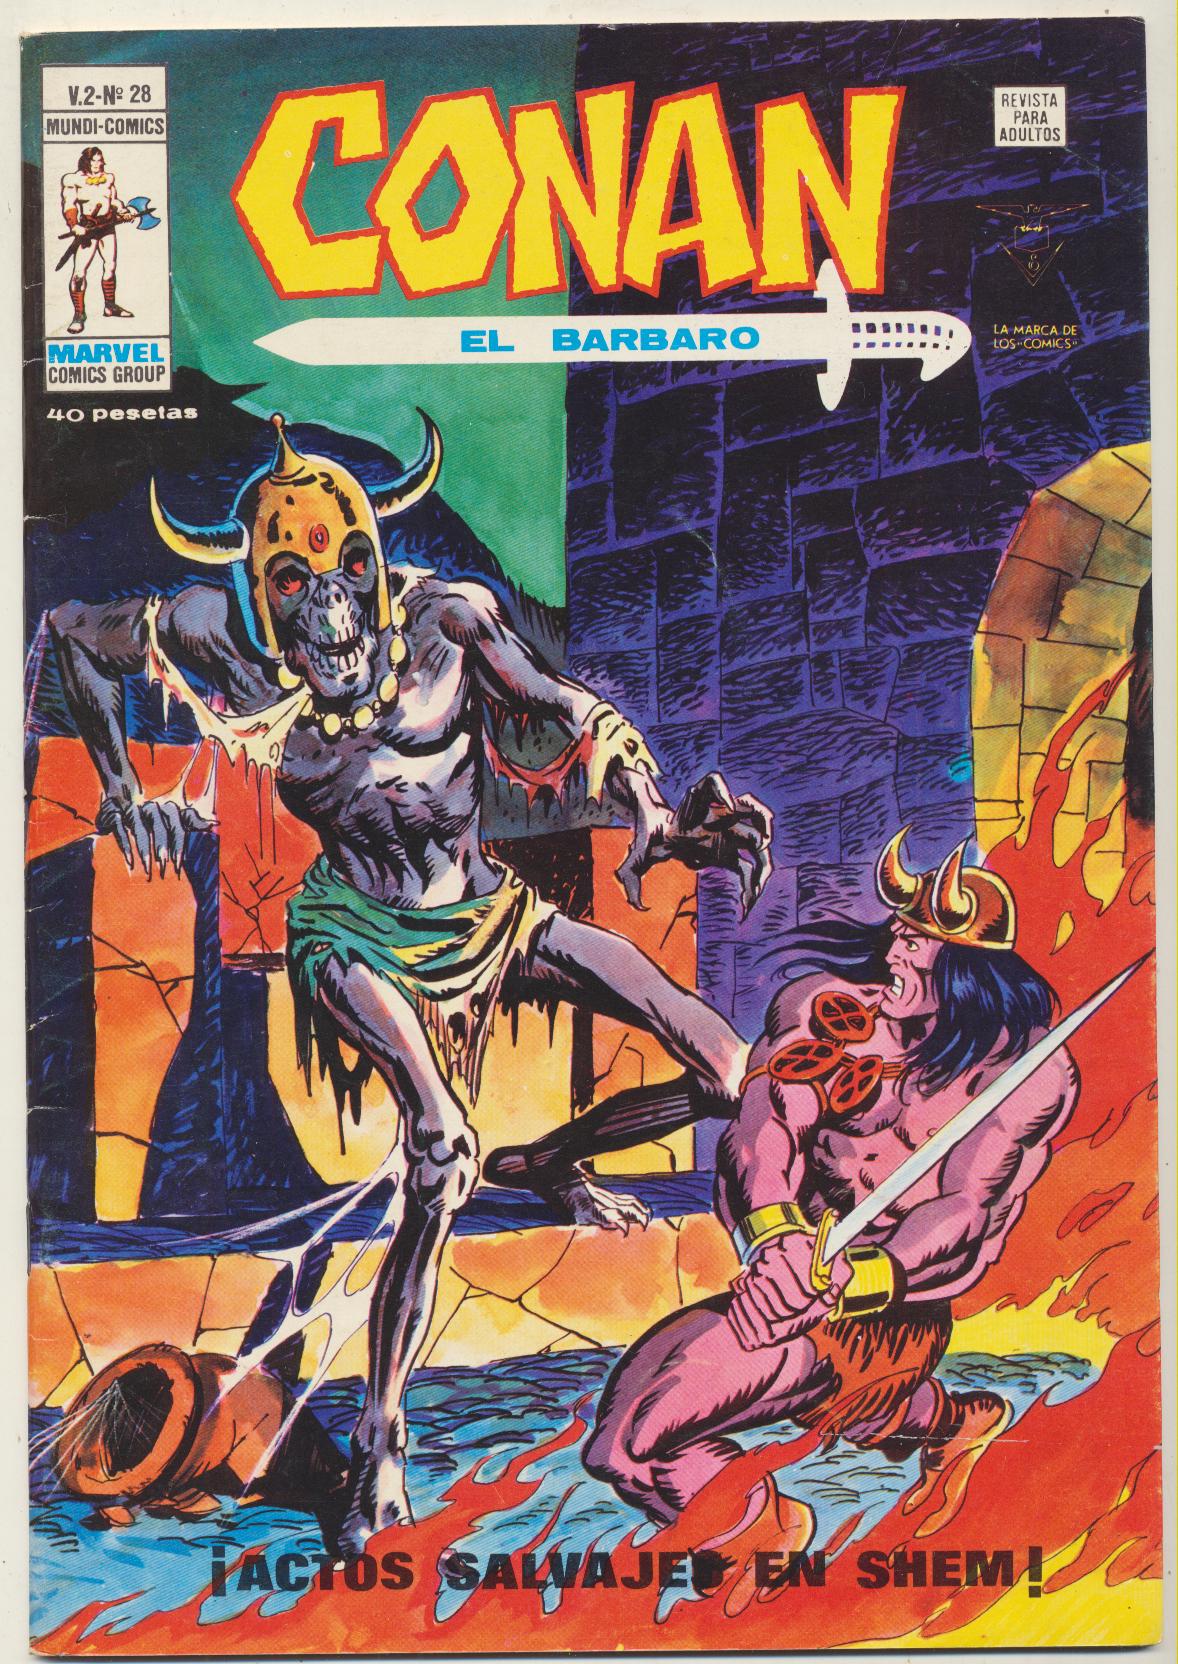 Conan El Bárbaro v2. Vértice 1974. Nº 28